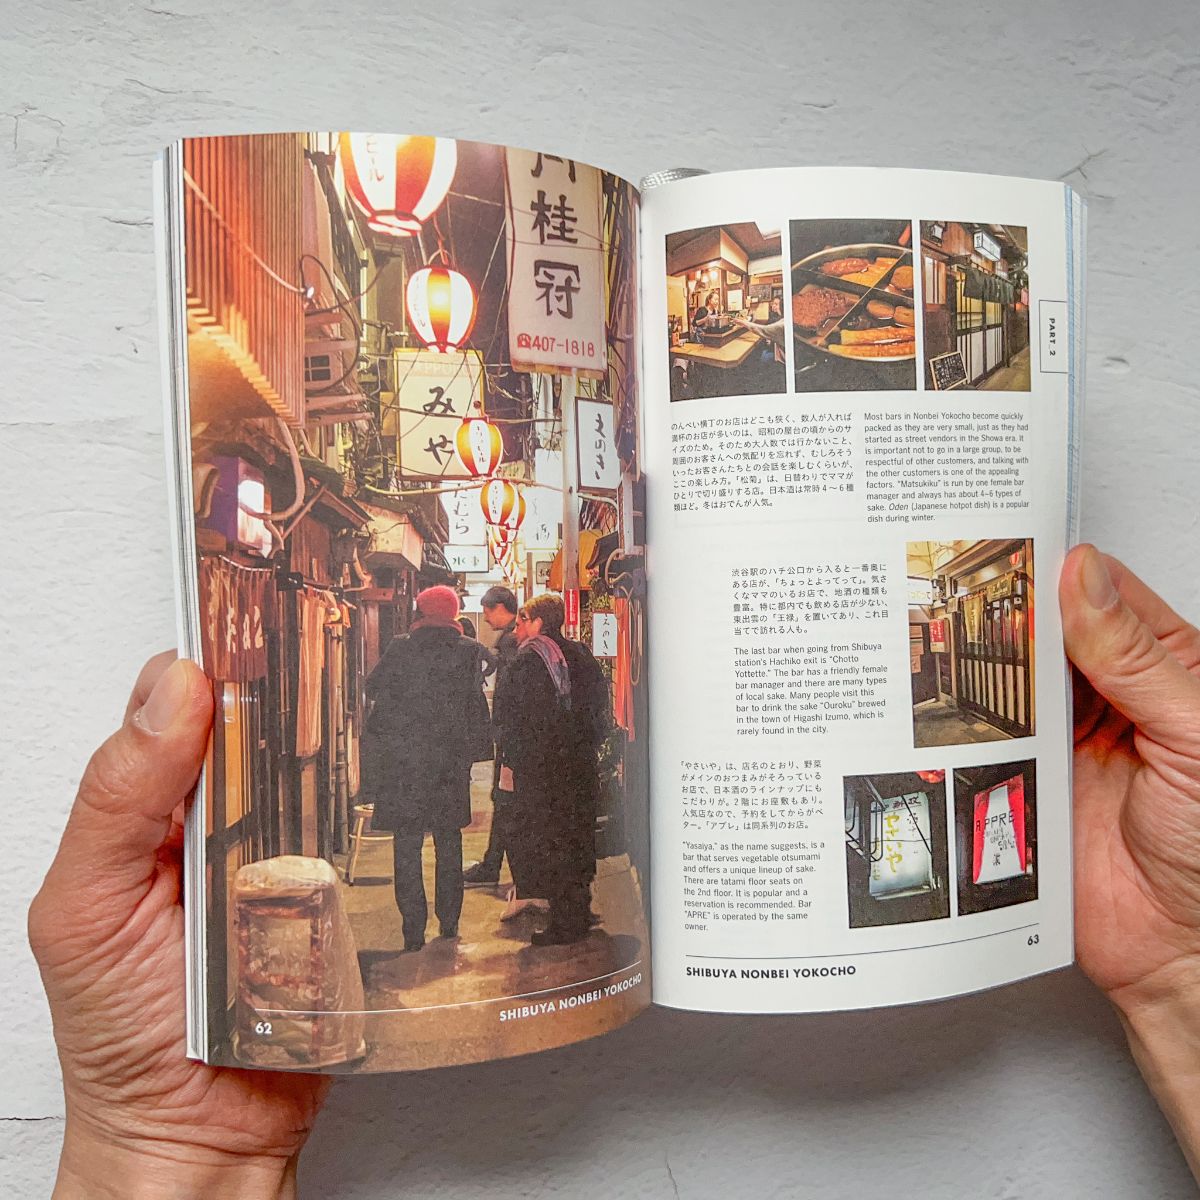 Tokyo Guide Book "TOKYO ARTRIP | Sake"Nagamochi Shop